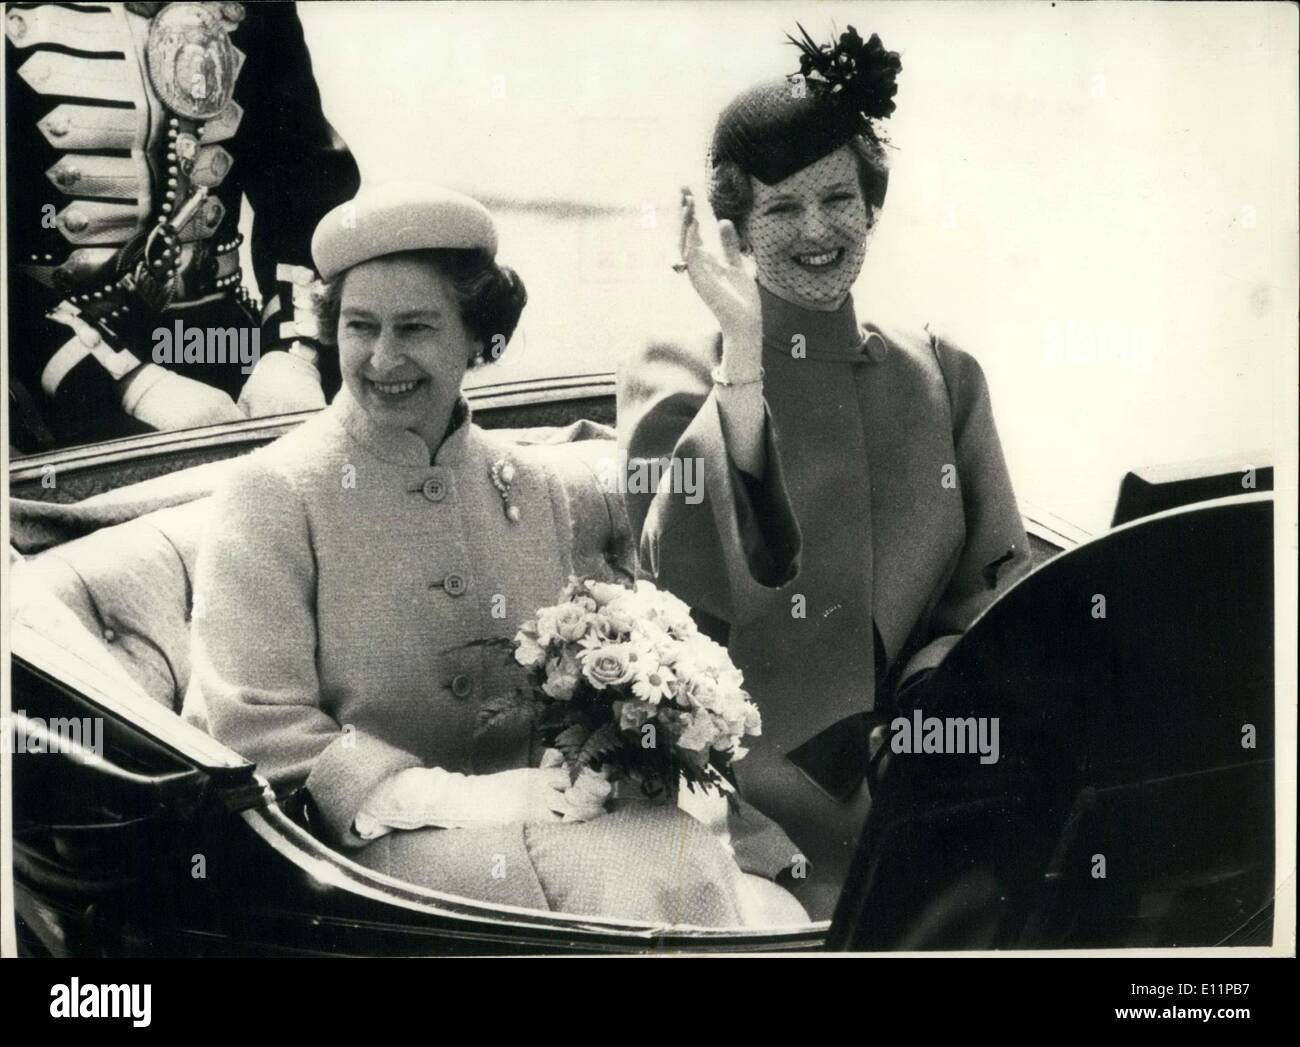 16 mai 1979 - La reine Elizabeth II et de la reine Margrethe du Danemark à Copenhague Apress. Banque D'Images